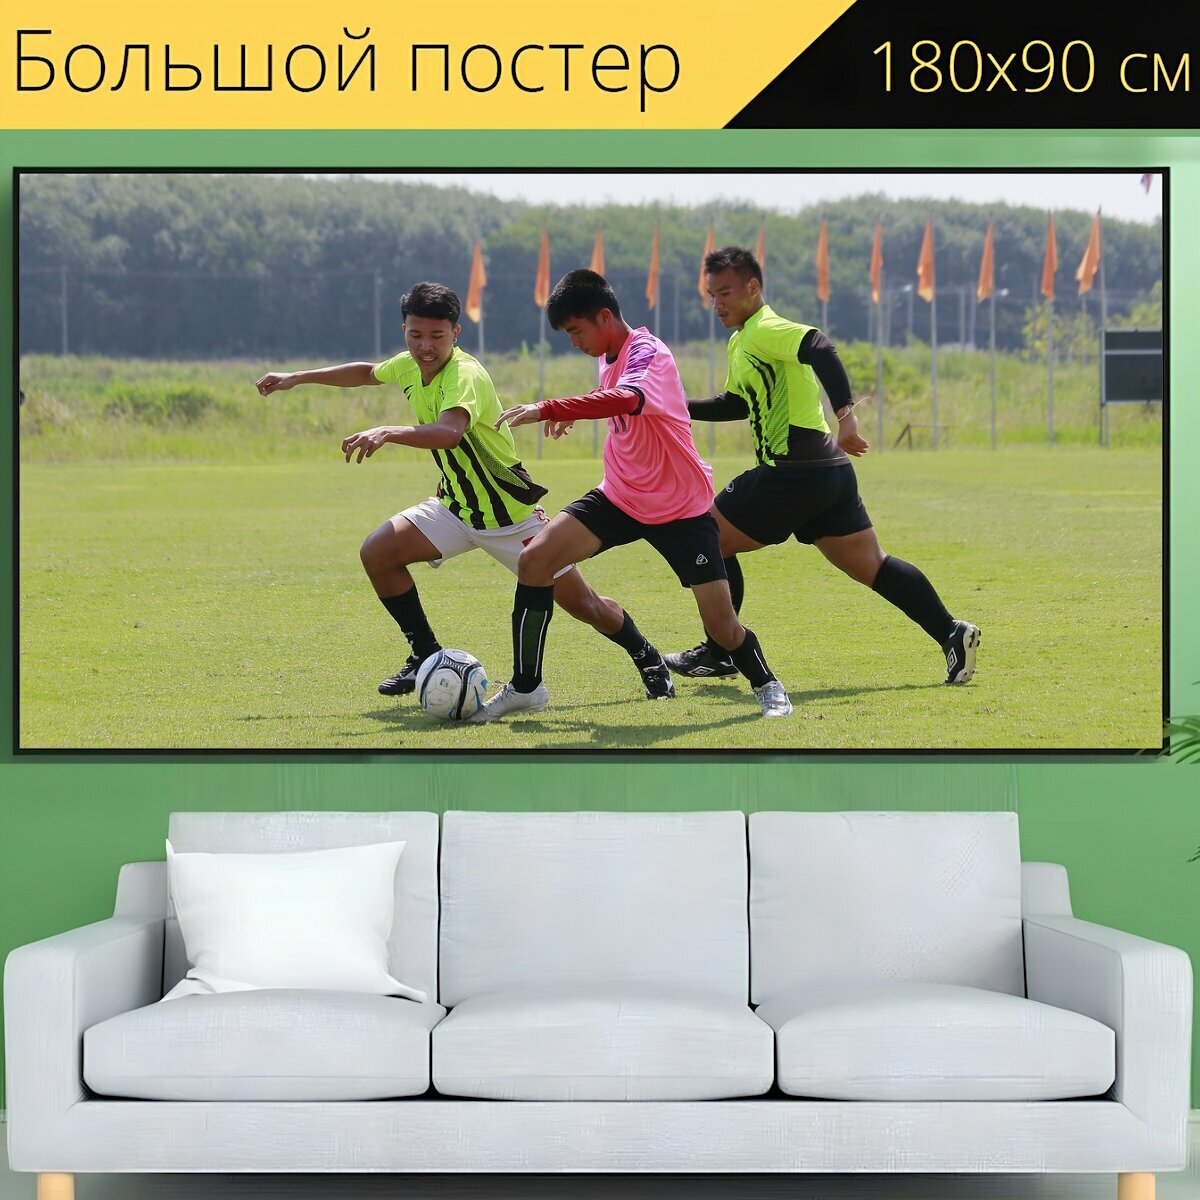 Большой постер "Футбол, виды спорта, футбольное поле" 180 x 90 см. для интерьера